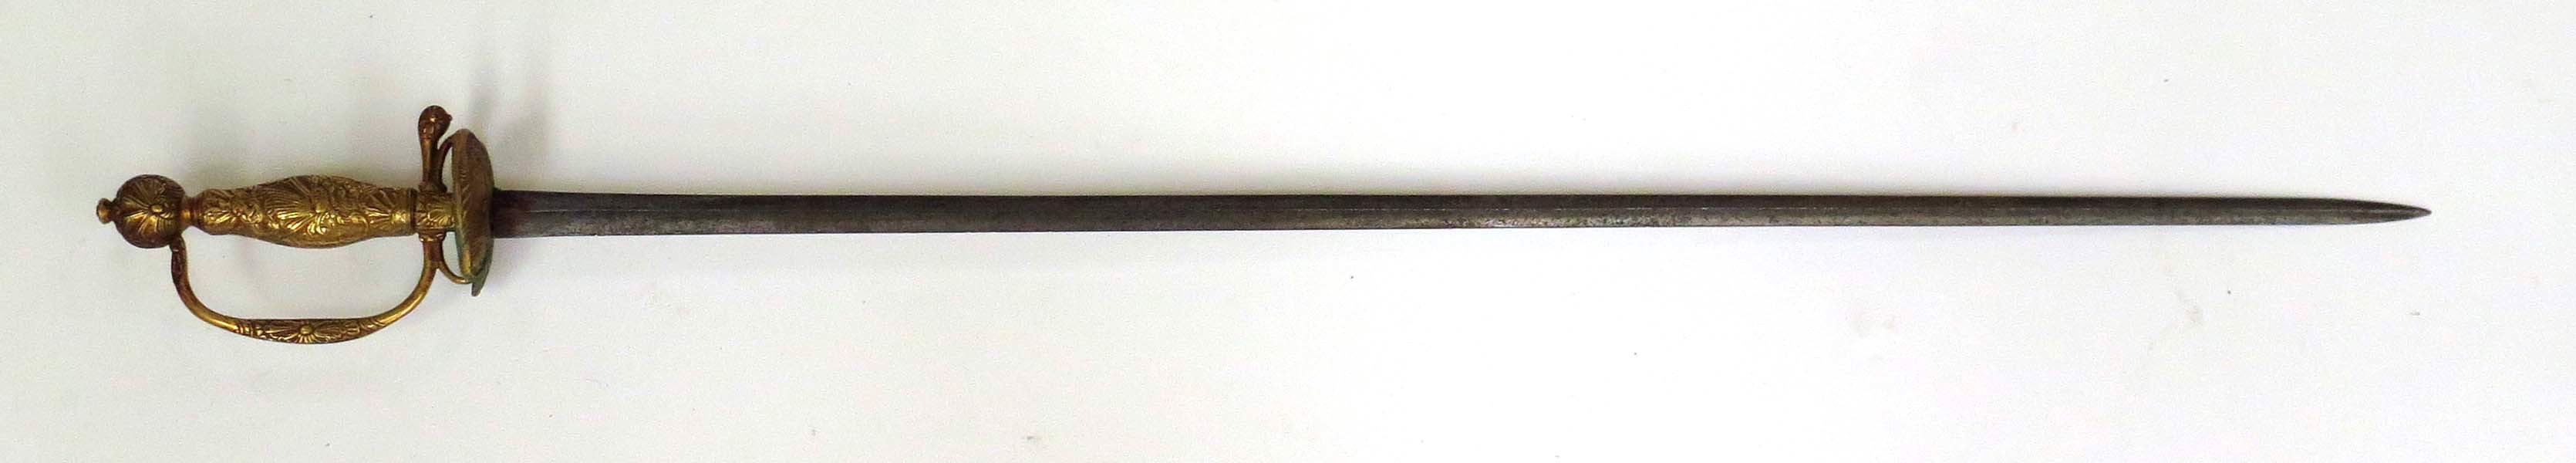 Dräktvärja, smide med förgyllt bronsfäste, 1700-talets 2 hälft, _2161a_lg.jpeg